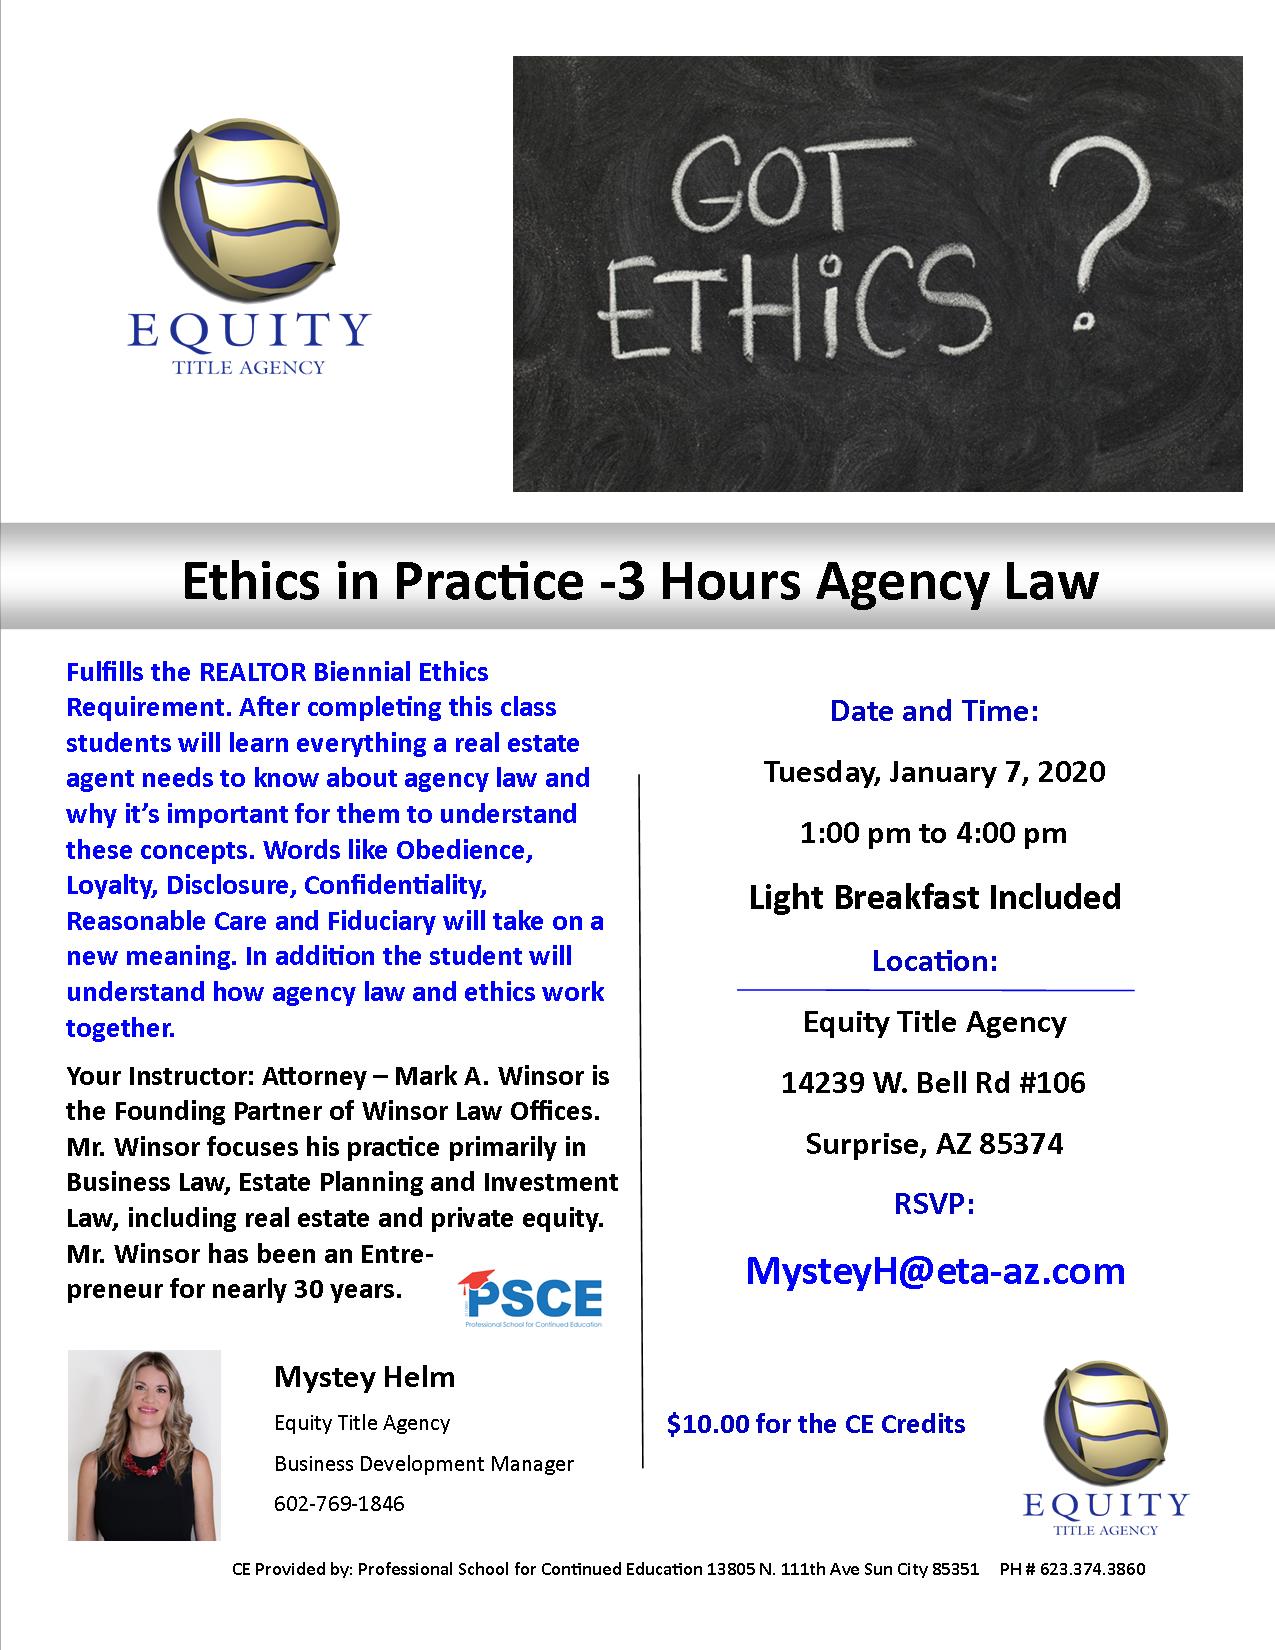 Jan 7 Ethics Mystey